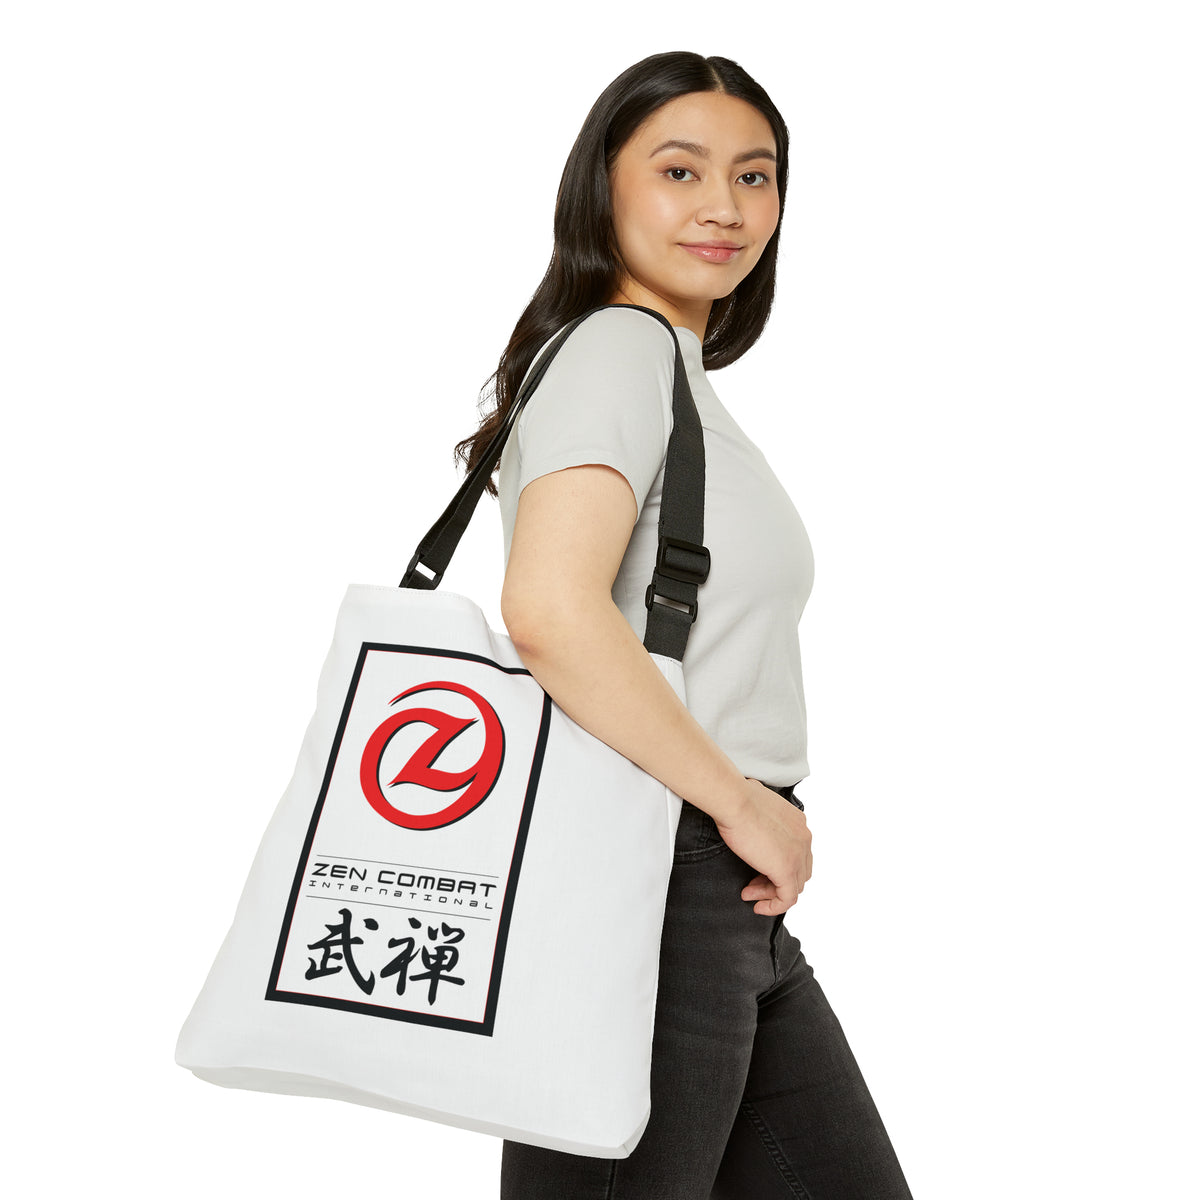 Zen Combat Adjustable Tote Bag - White